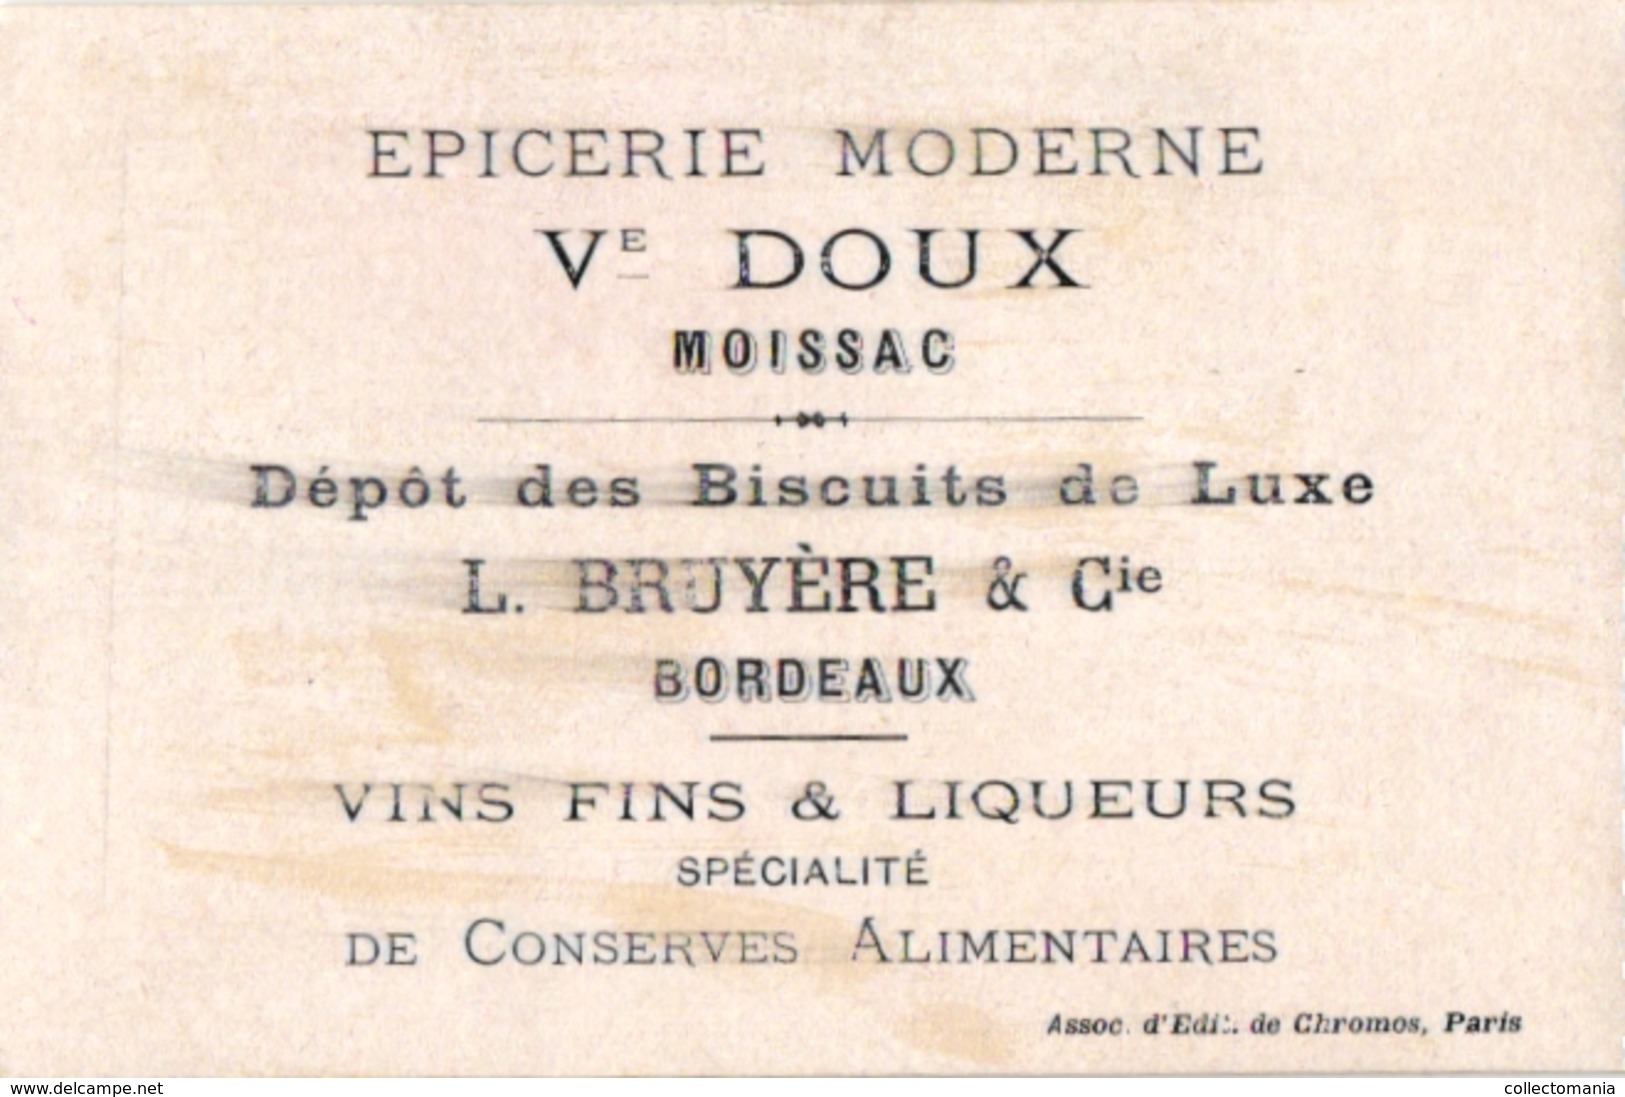 6 litho chromo  CARDS c1900 CROQUET GAME JEU de CROQUET Krocketspiel Pub Bordeaux Paris Choc des Gourmets Aiguebelle